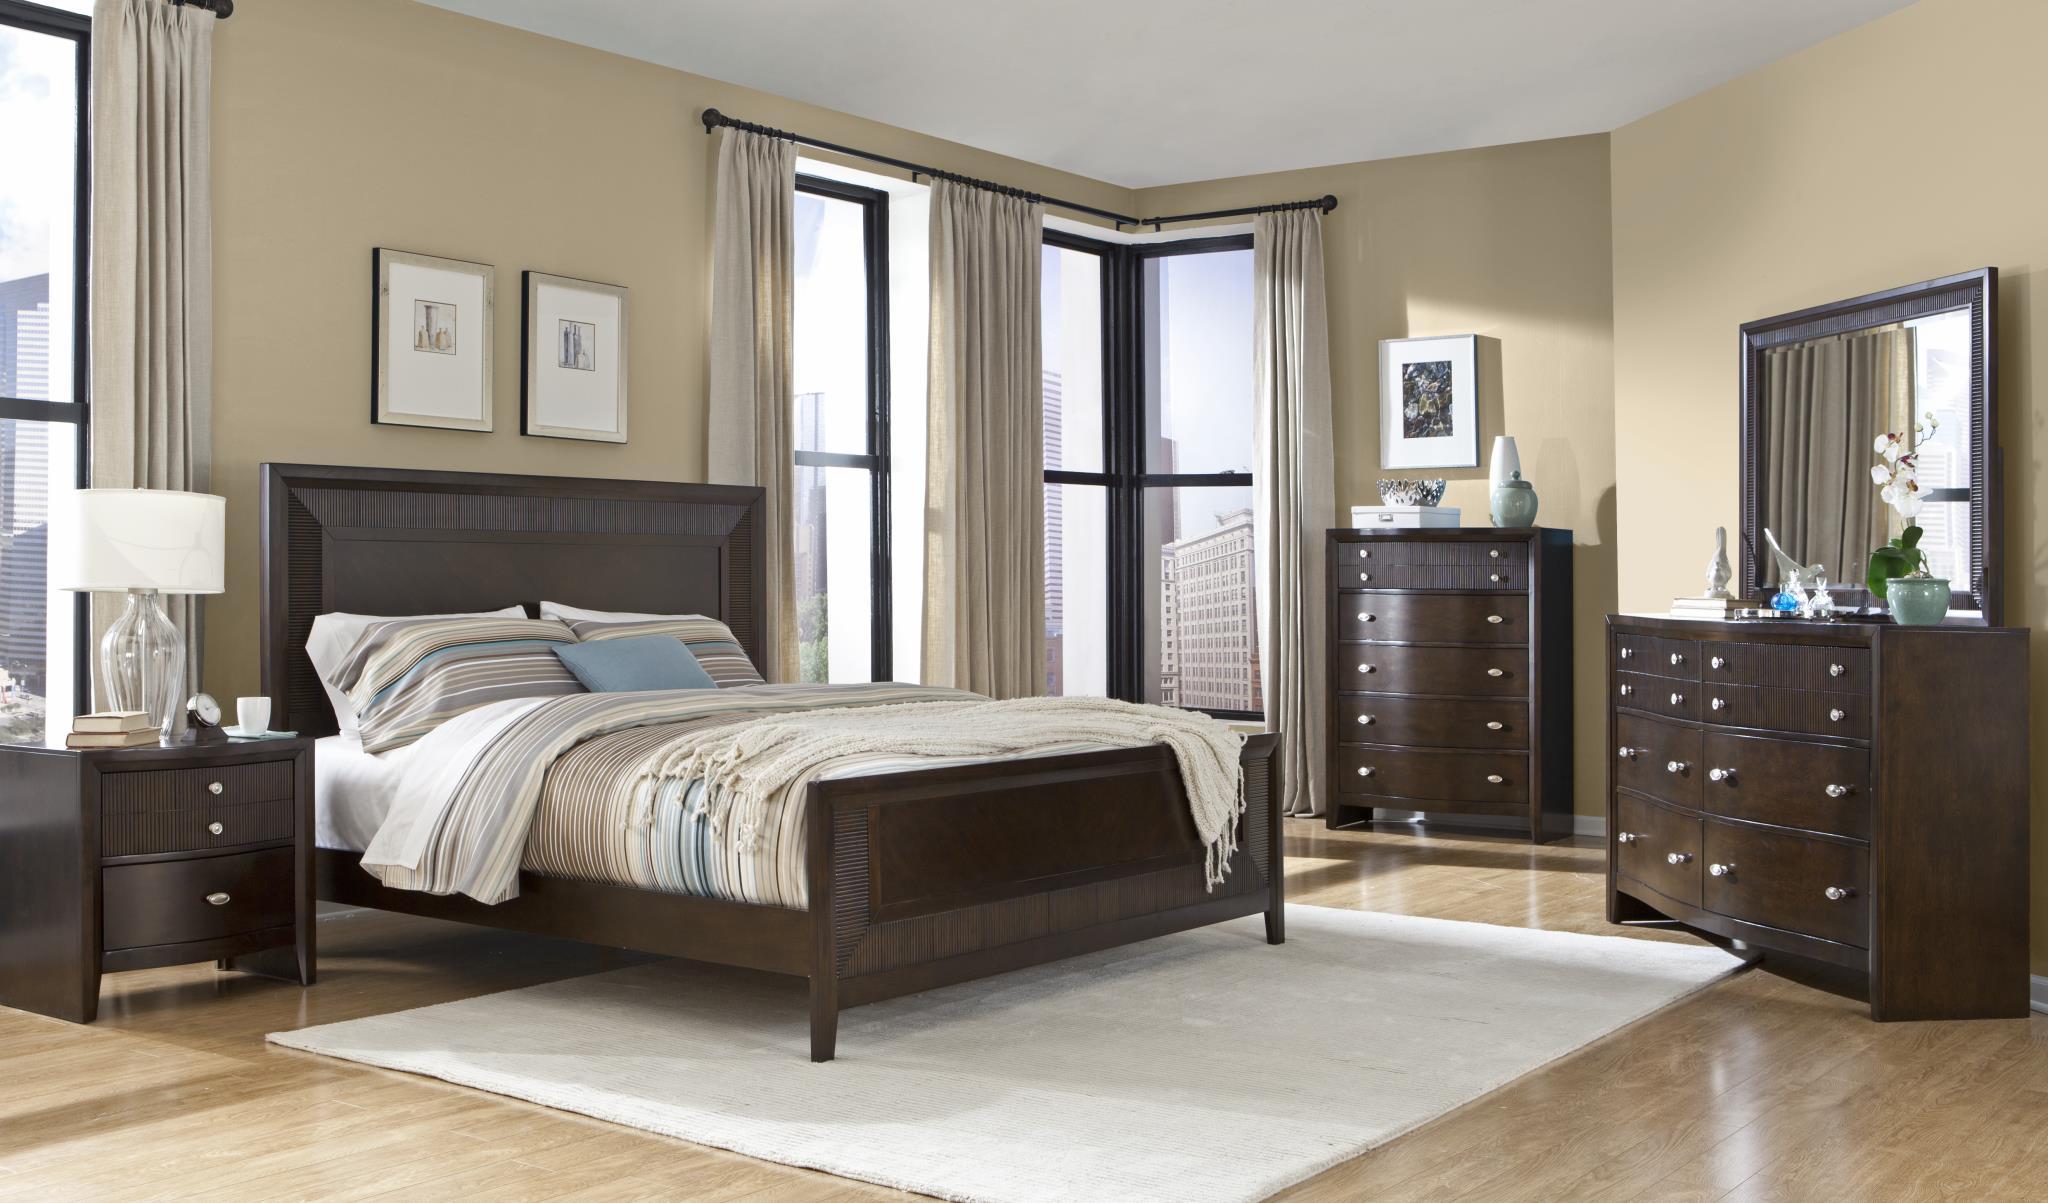 

    
Soflex Elora Espresso Finish Ribbed Wood Queen Bedroom Set 2Pcs Contemporary
